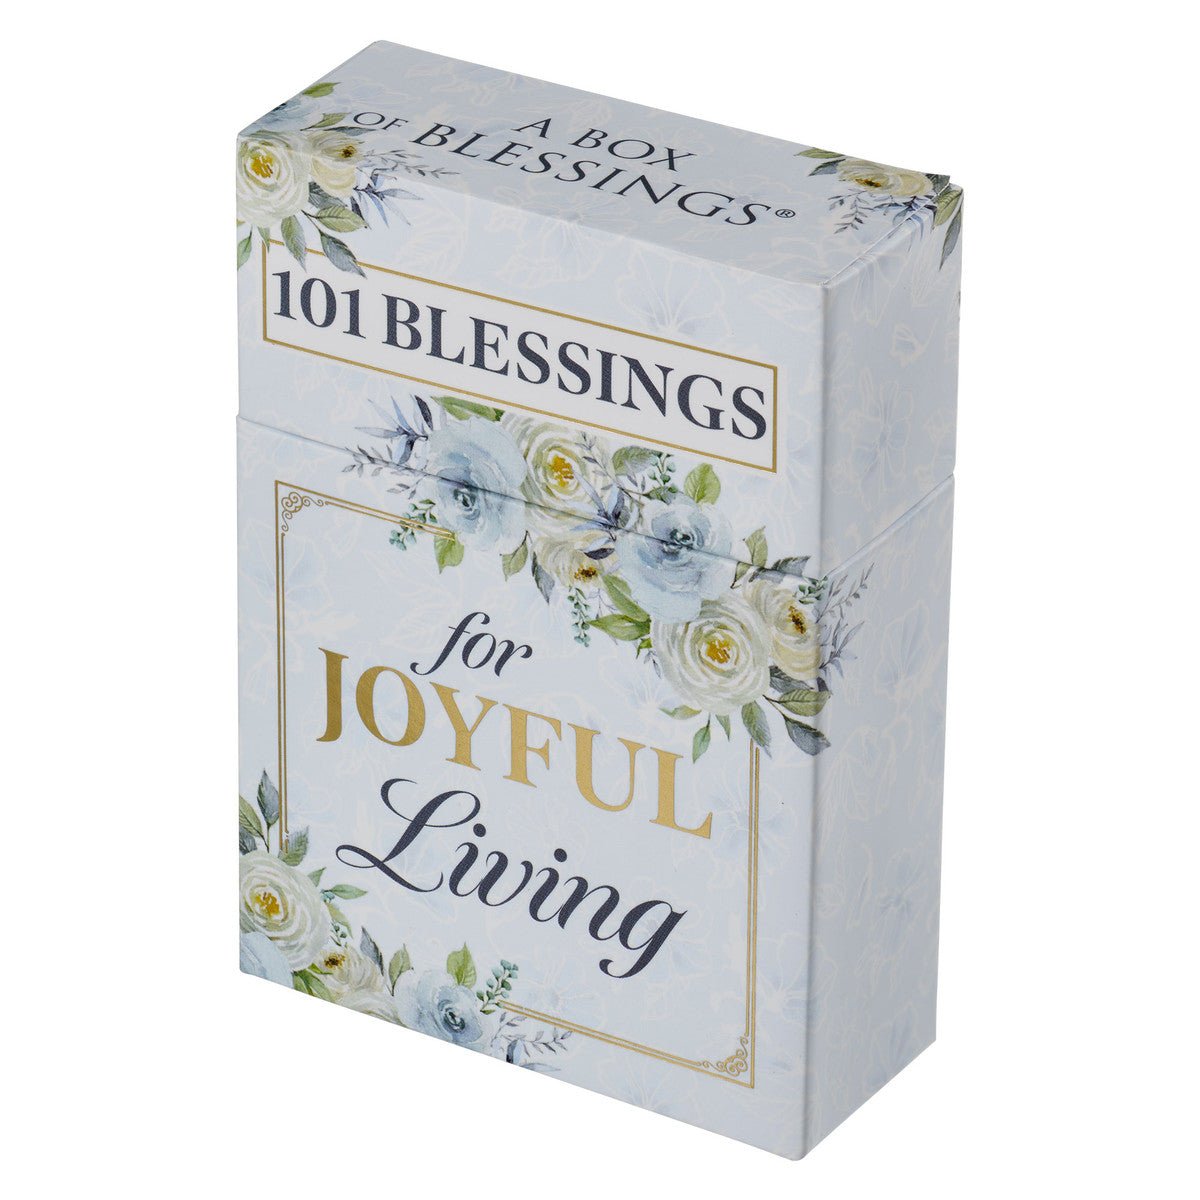 101 Blessings for Joyful Living Box of Blessings | 2FruitBearers